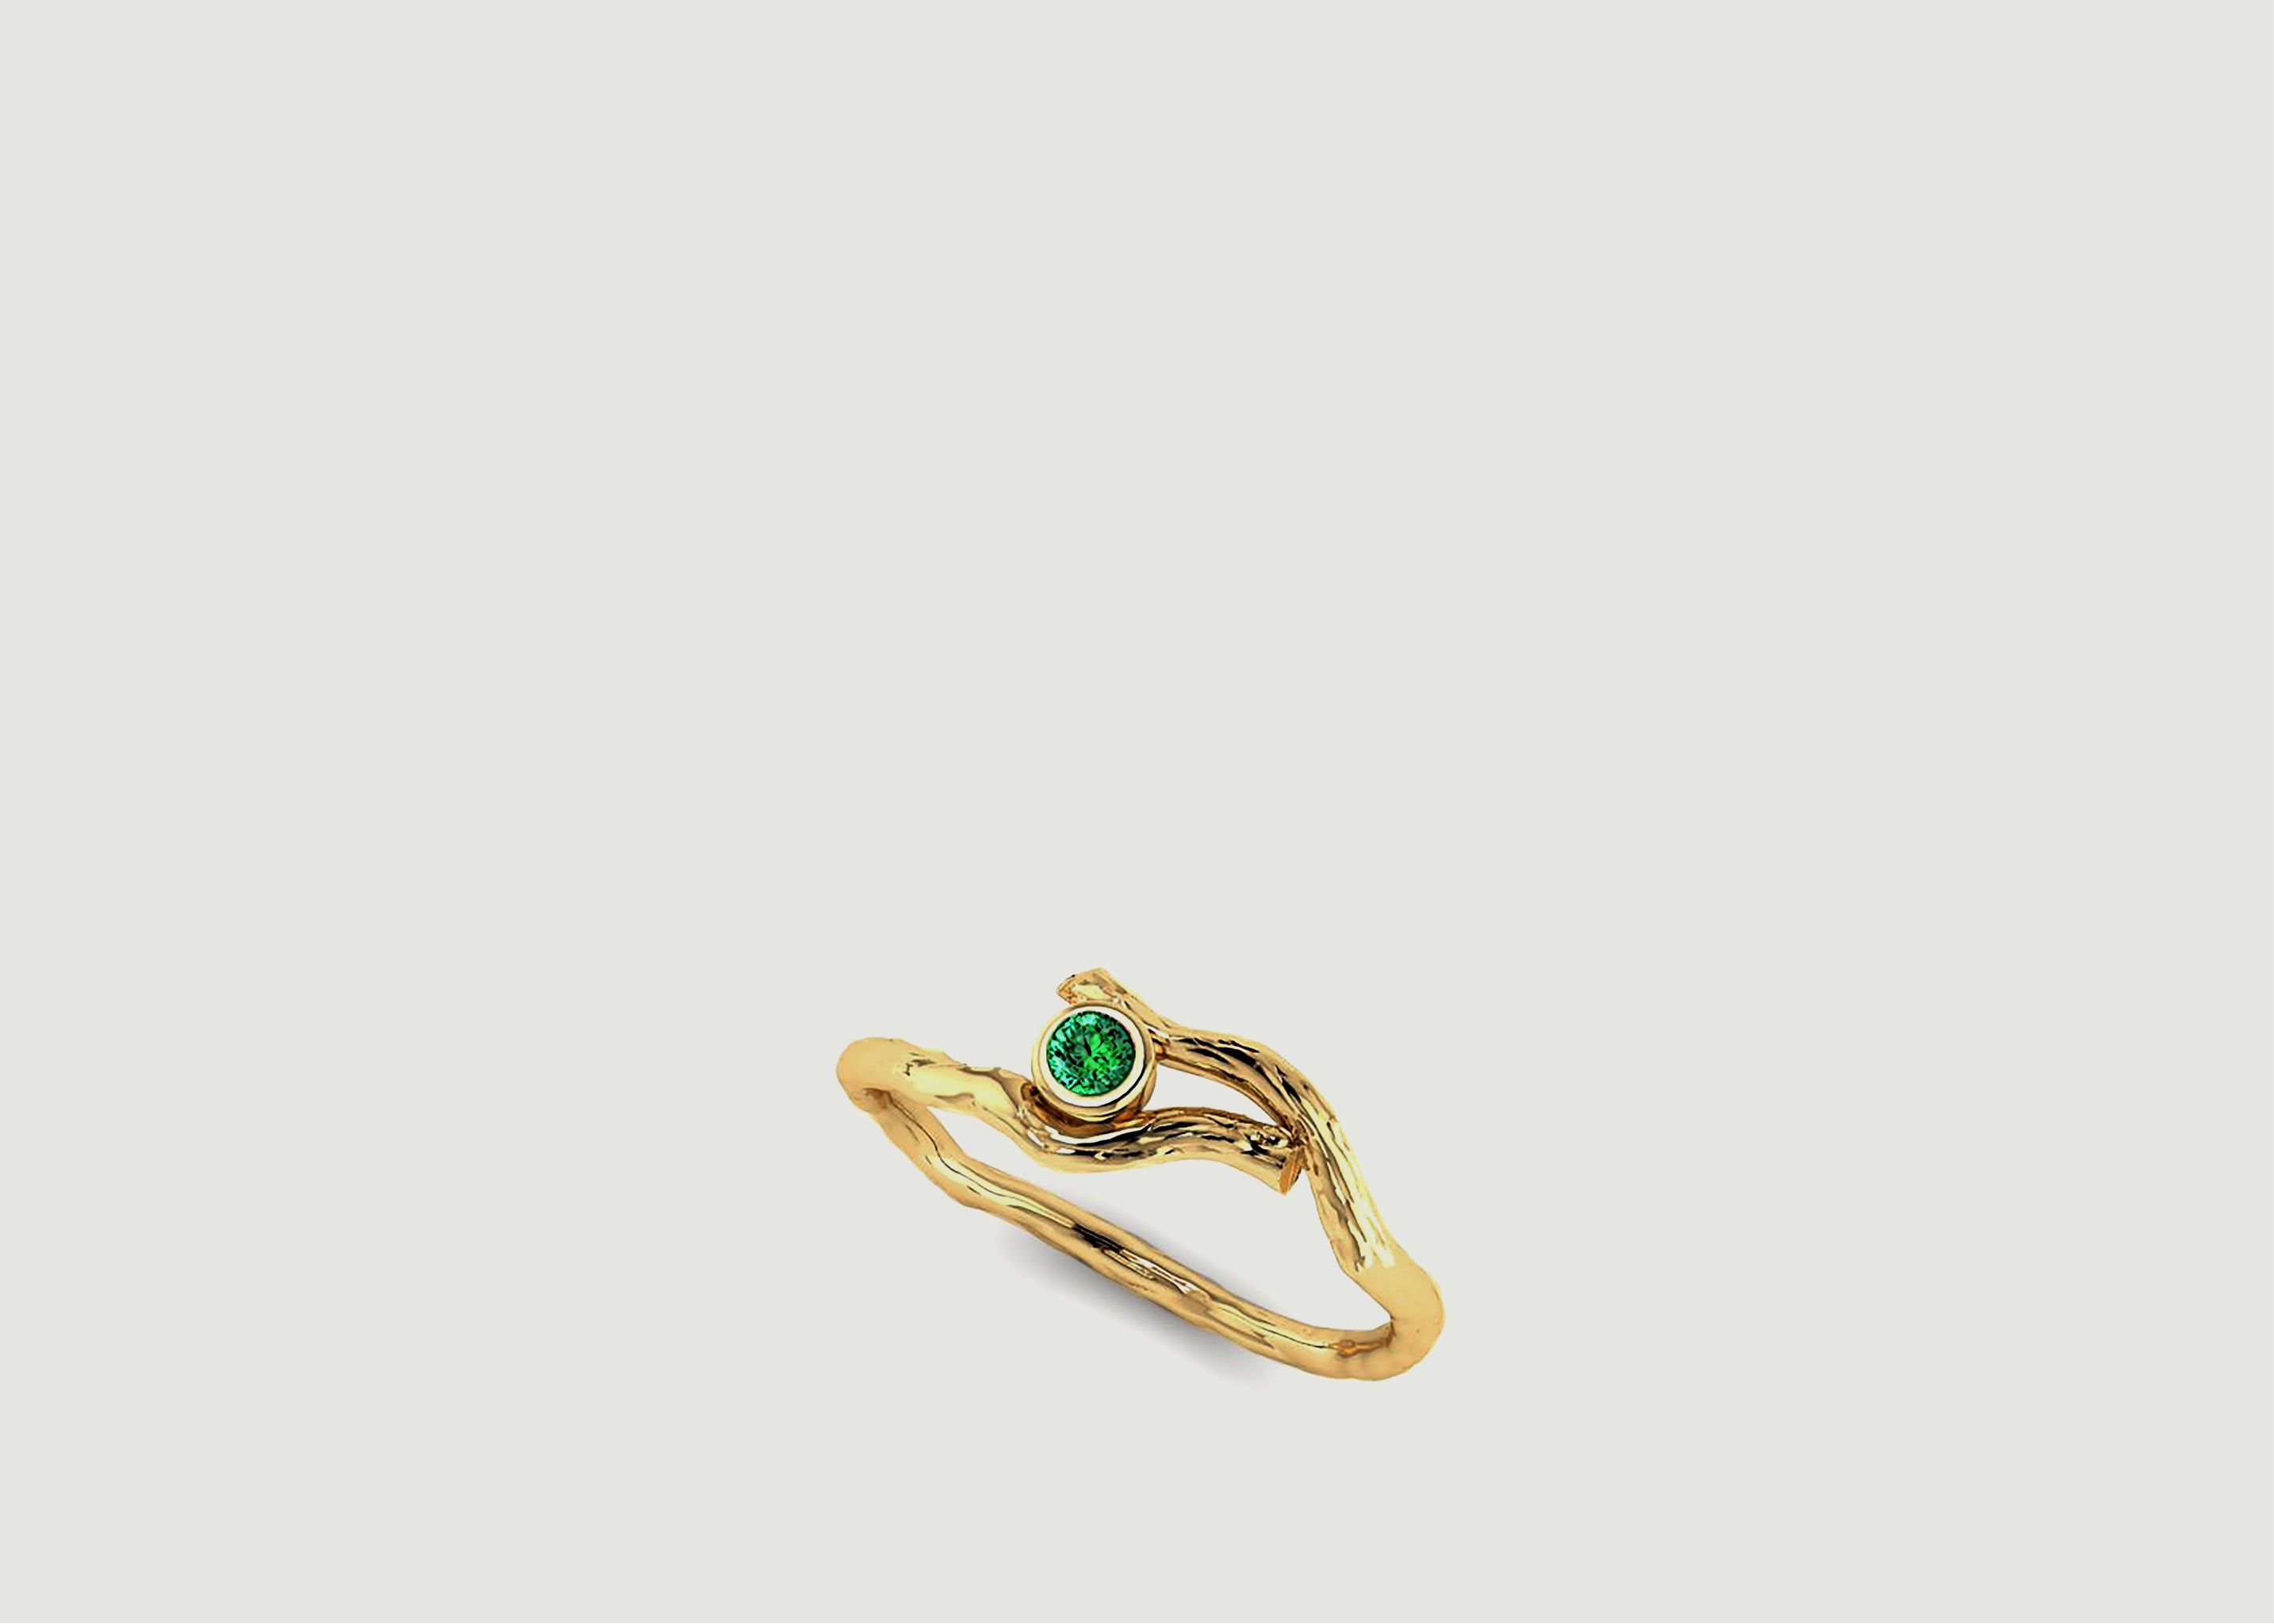 Bois de Santal ring with emerald sapphire - Ines de la Fressange Joaillerie